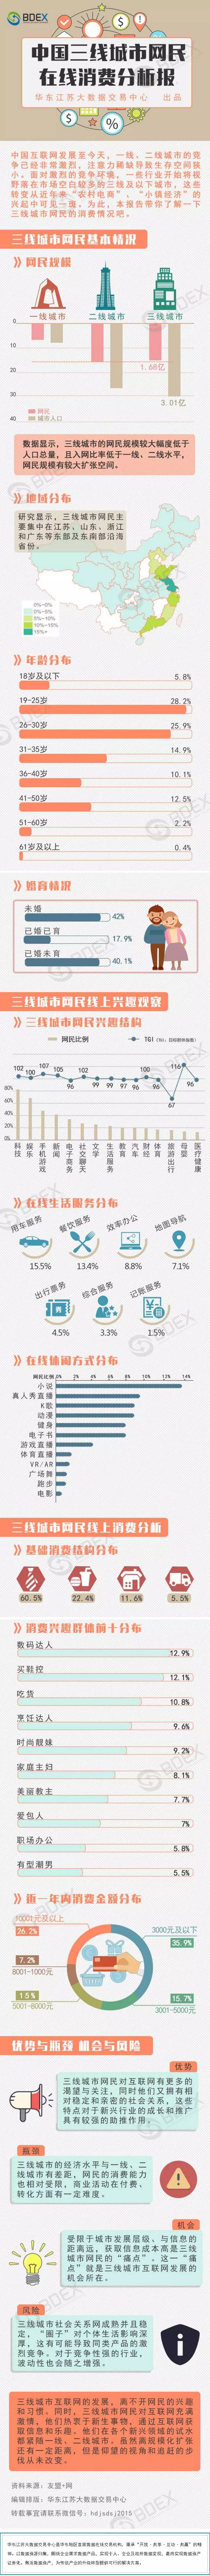 中国三线城市网民在线消费分析报告.png